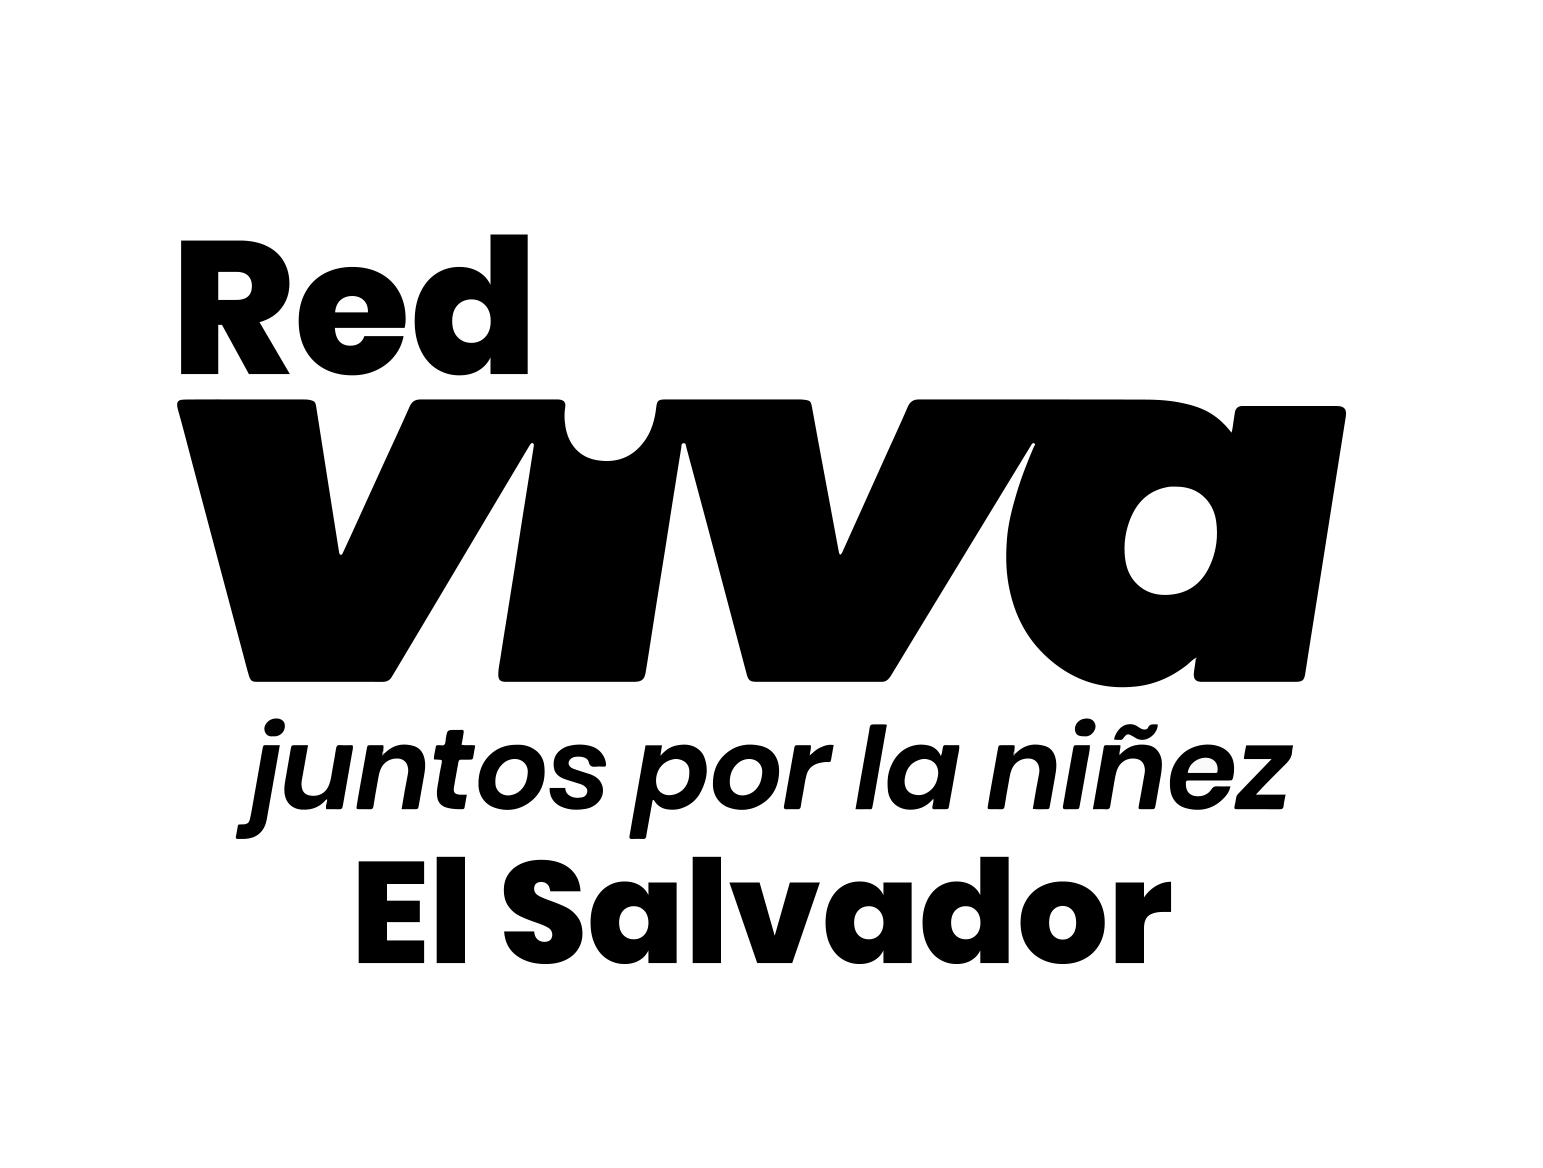 Logo Red VIVA El Salvador